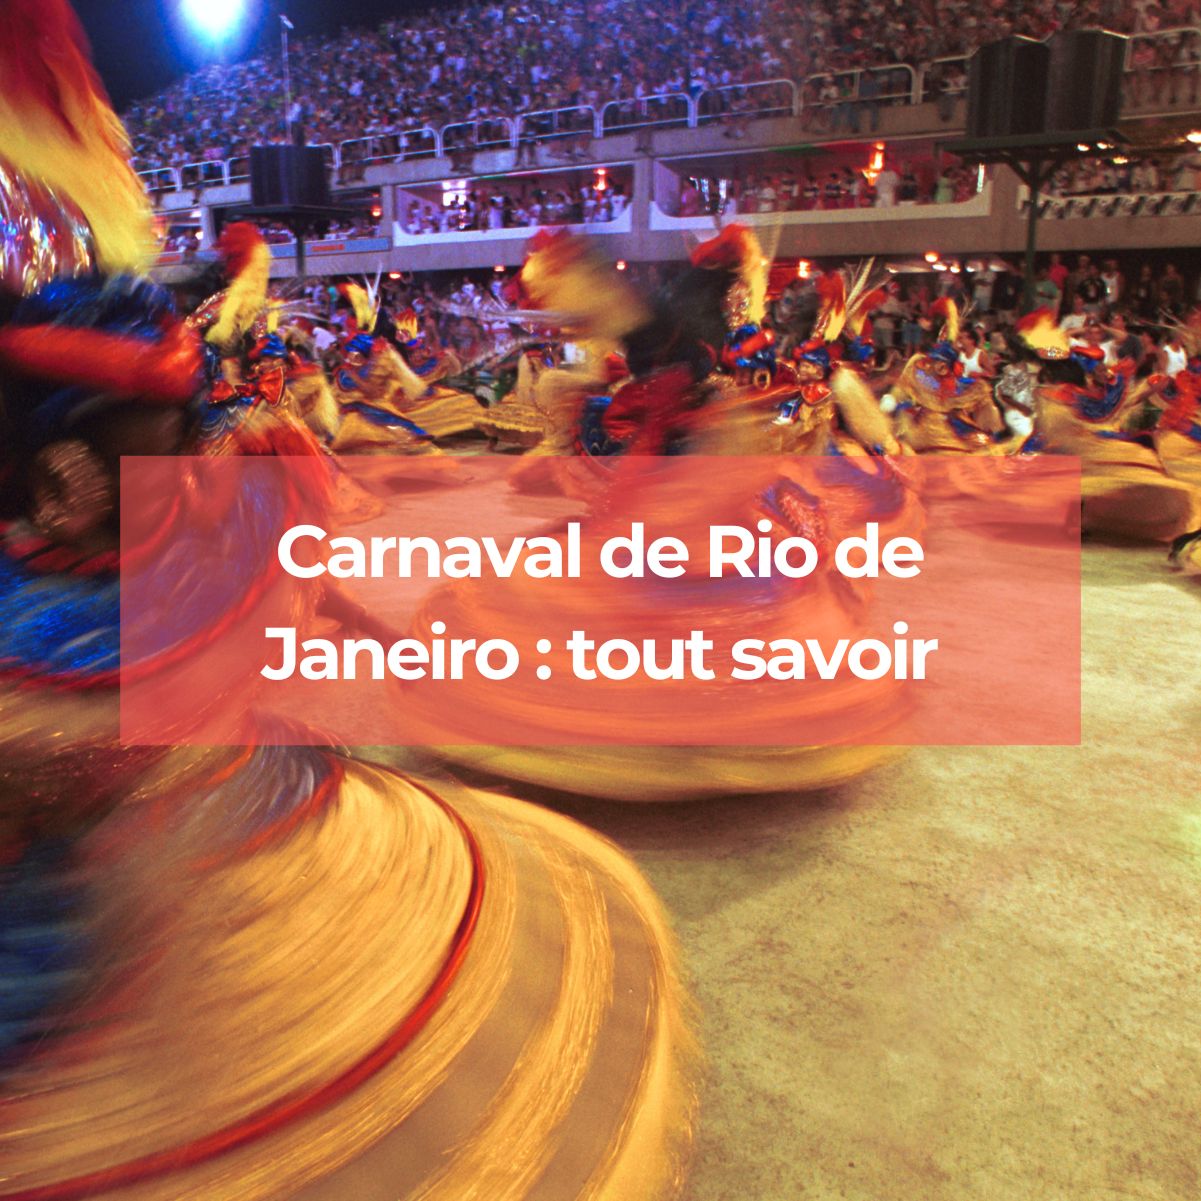 Carnaval de Rio de Janeiro : la fête la plus spectaculaire